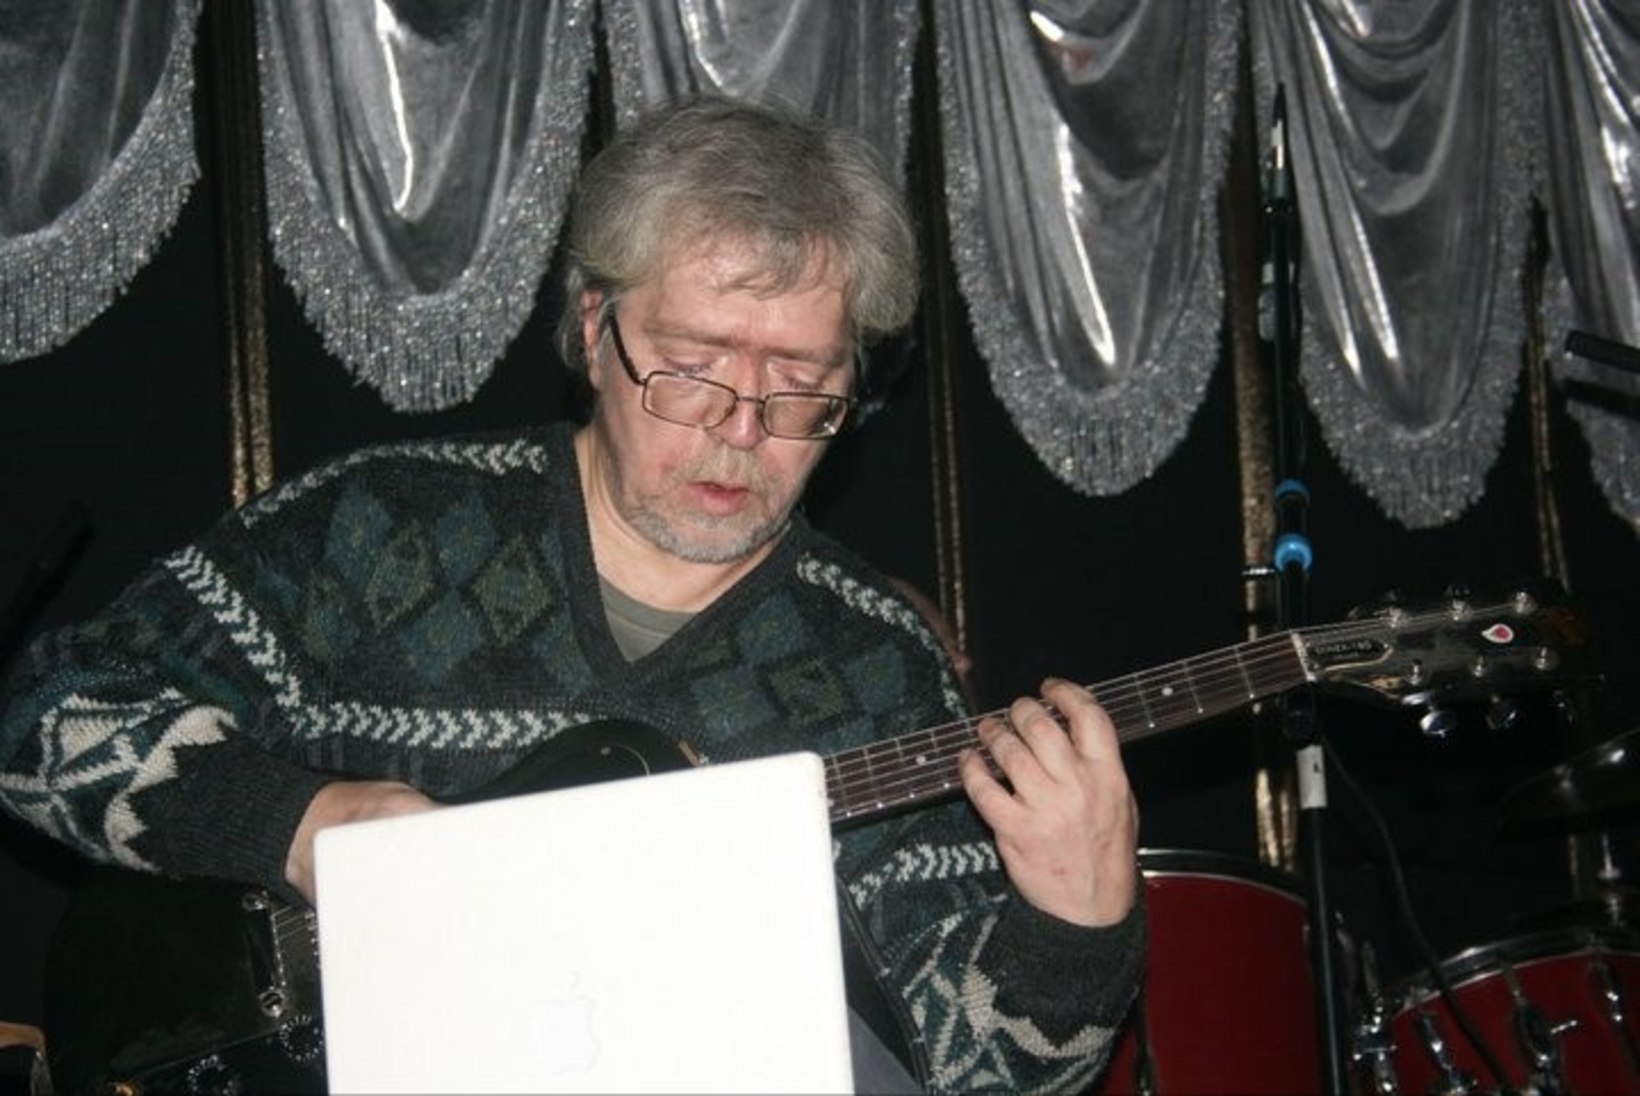 Lennukist haisu tõttu eemaldatud vene muusik suri kuu hiljem nekroosi